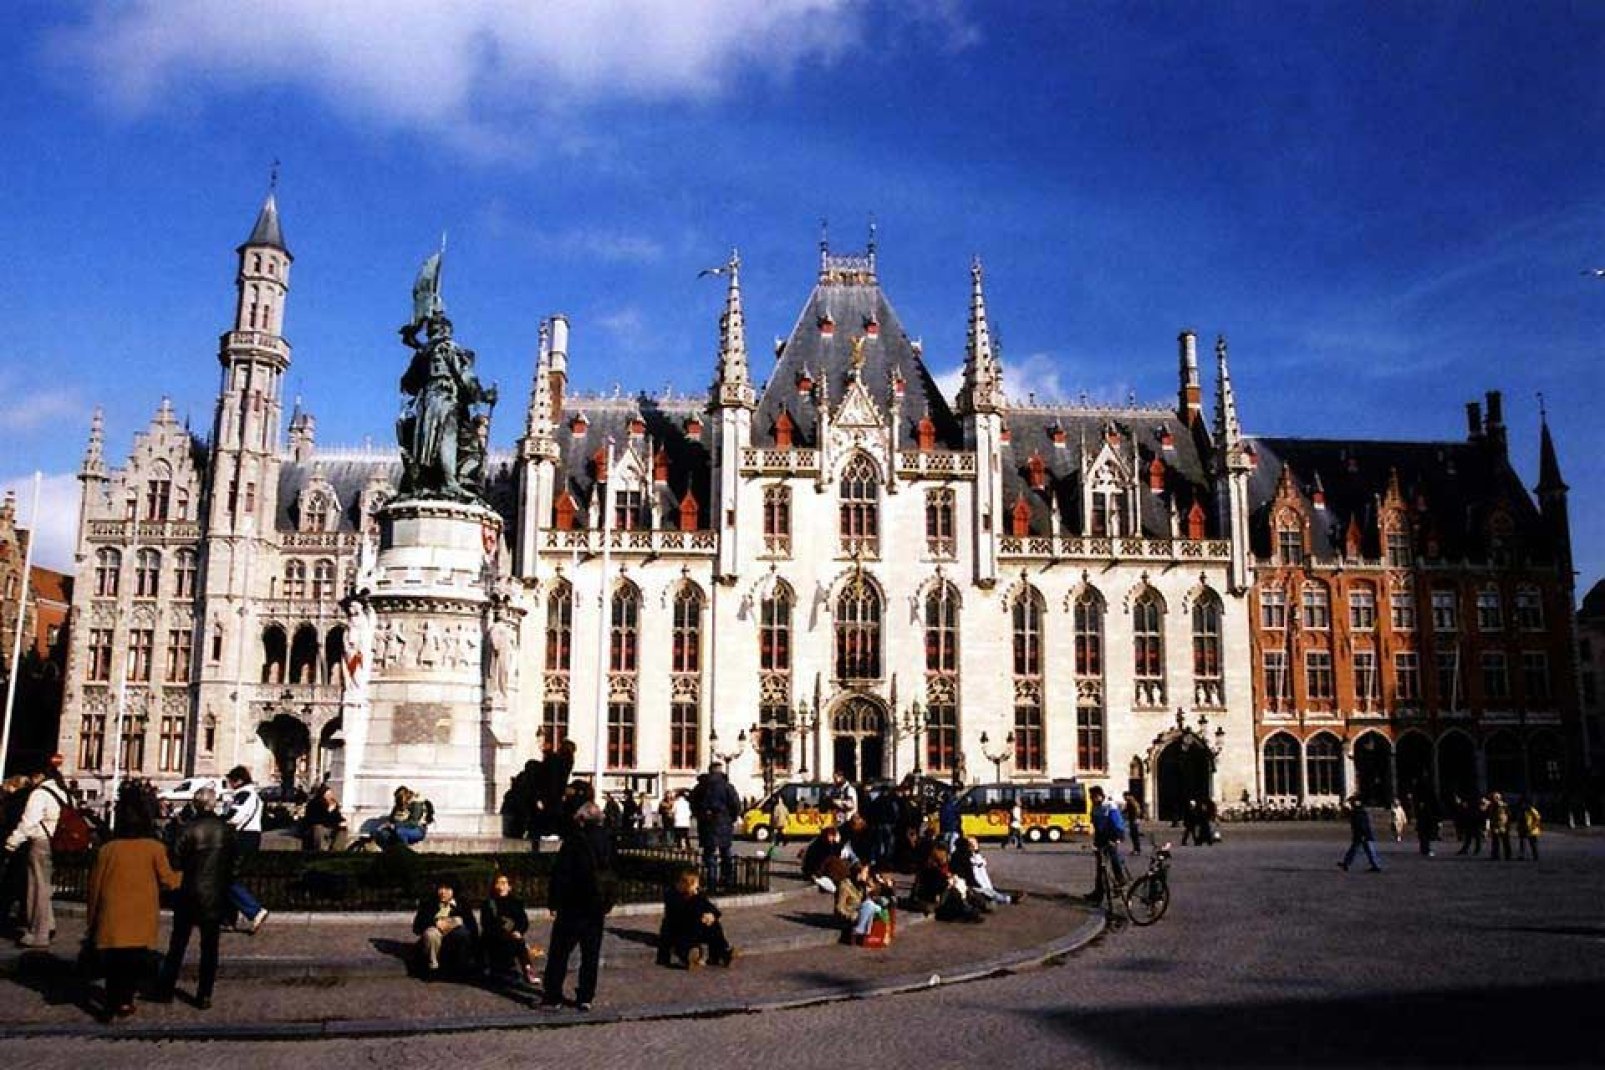 Questo edificio, che risale alla fine del XIV secolo, è il più antico delle Fiandre. La sua architettura caratteristica in stile fiammingo impressiona i visitatori.